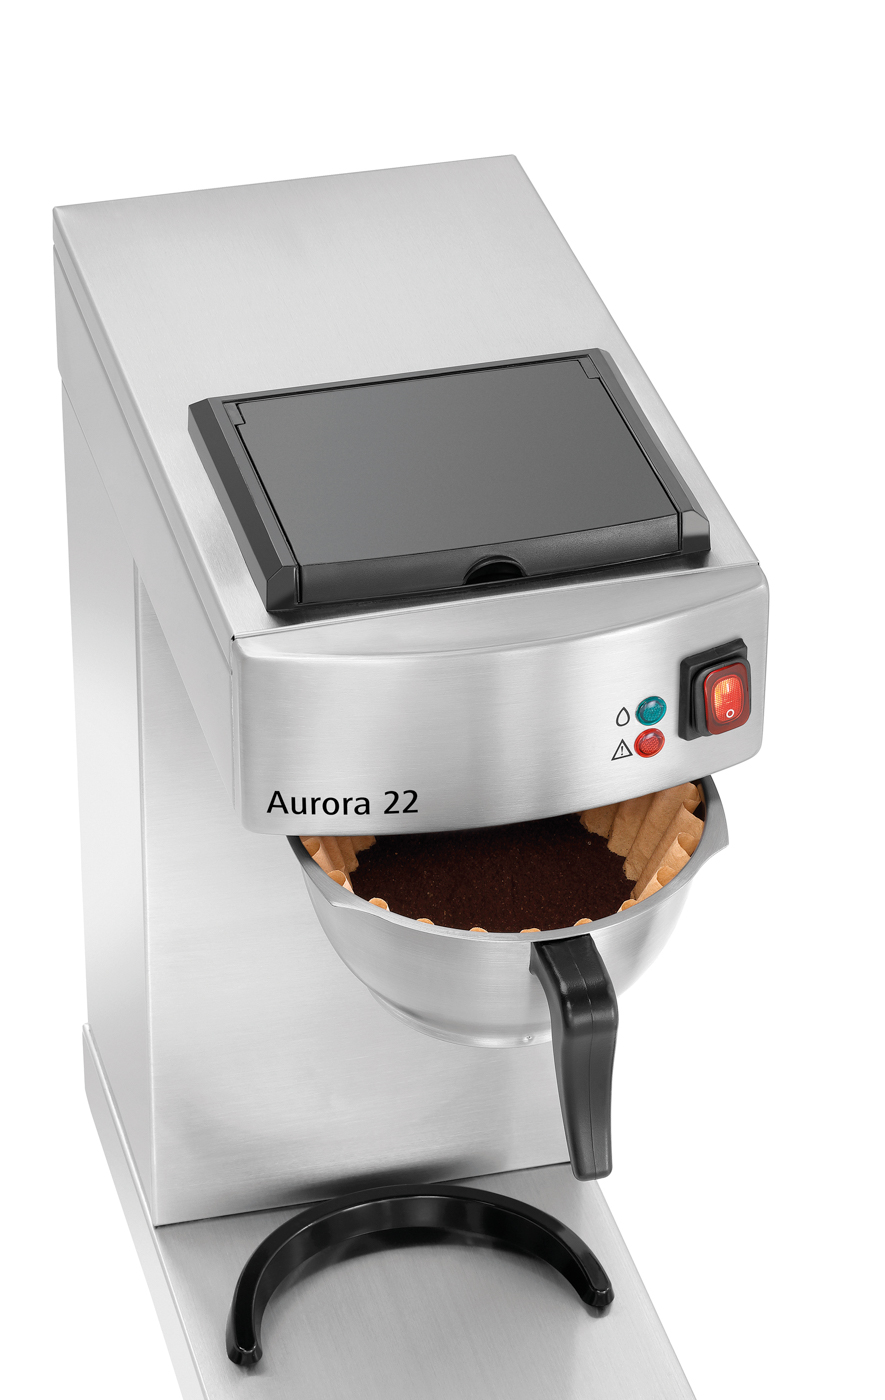 Bartscher Kaffeemaschine Aurora 22 | Steuerung:Kippschalter | Maße: 21,5 x 40,5 x 52,0 cm.Gewicht: 8 kg